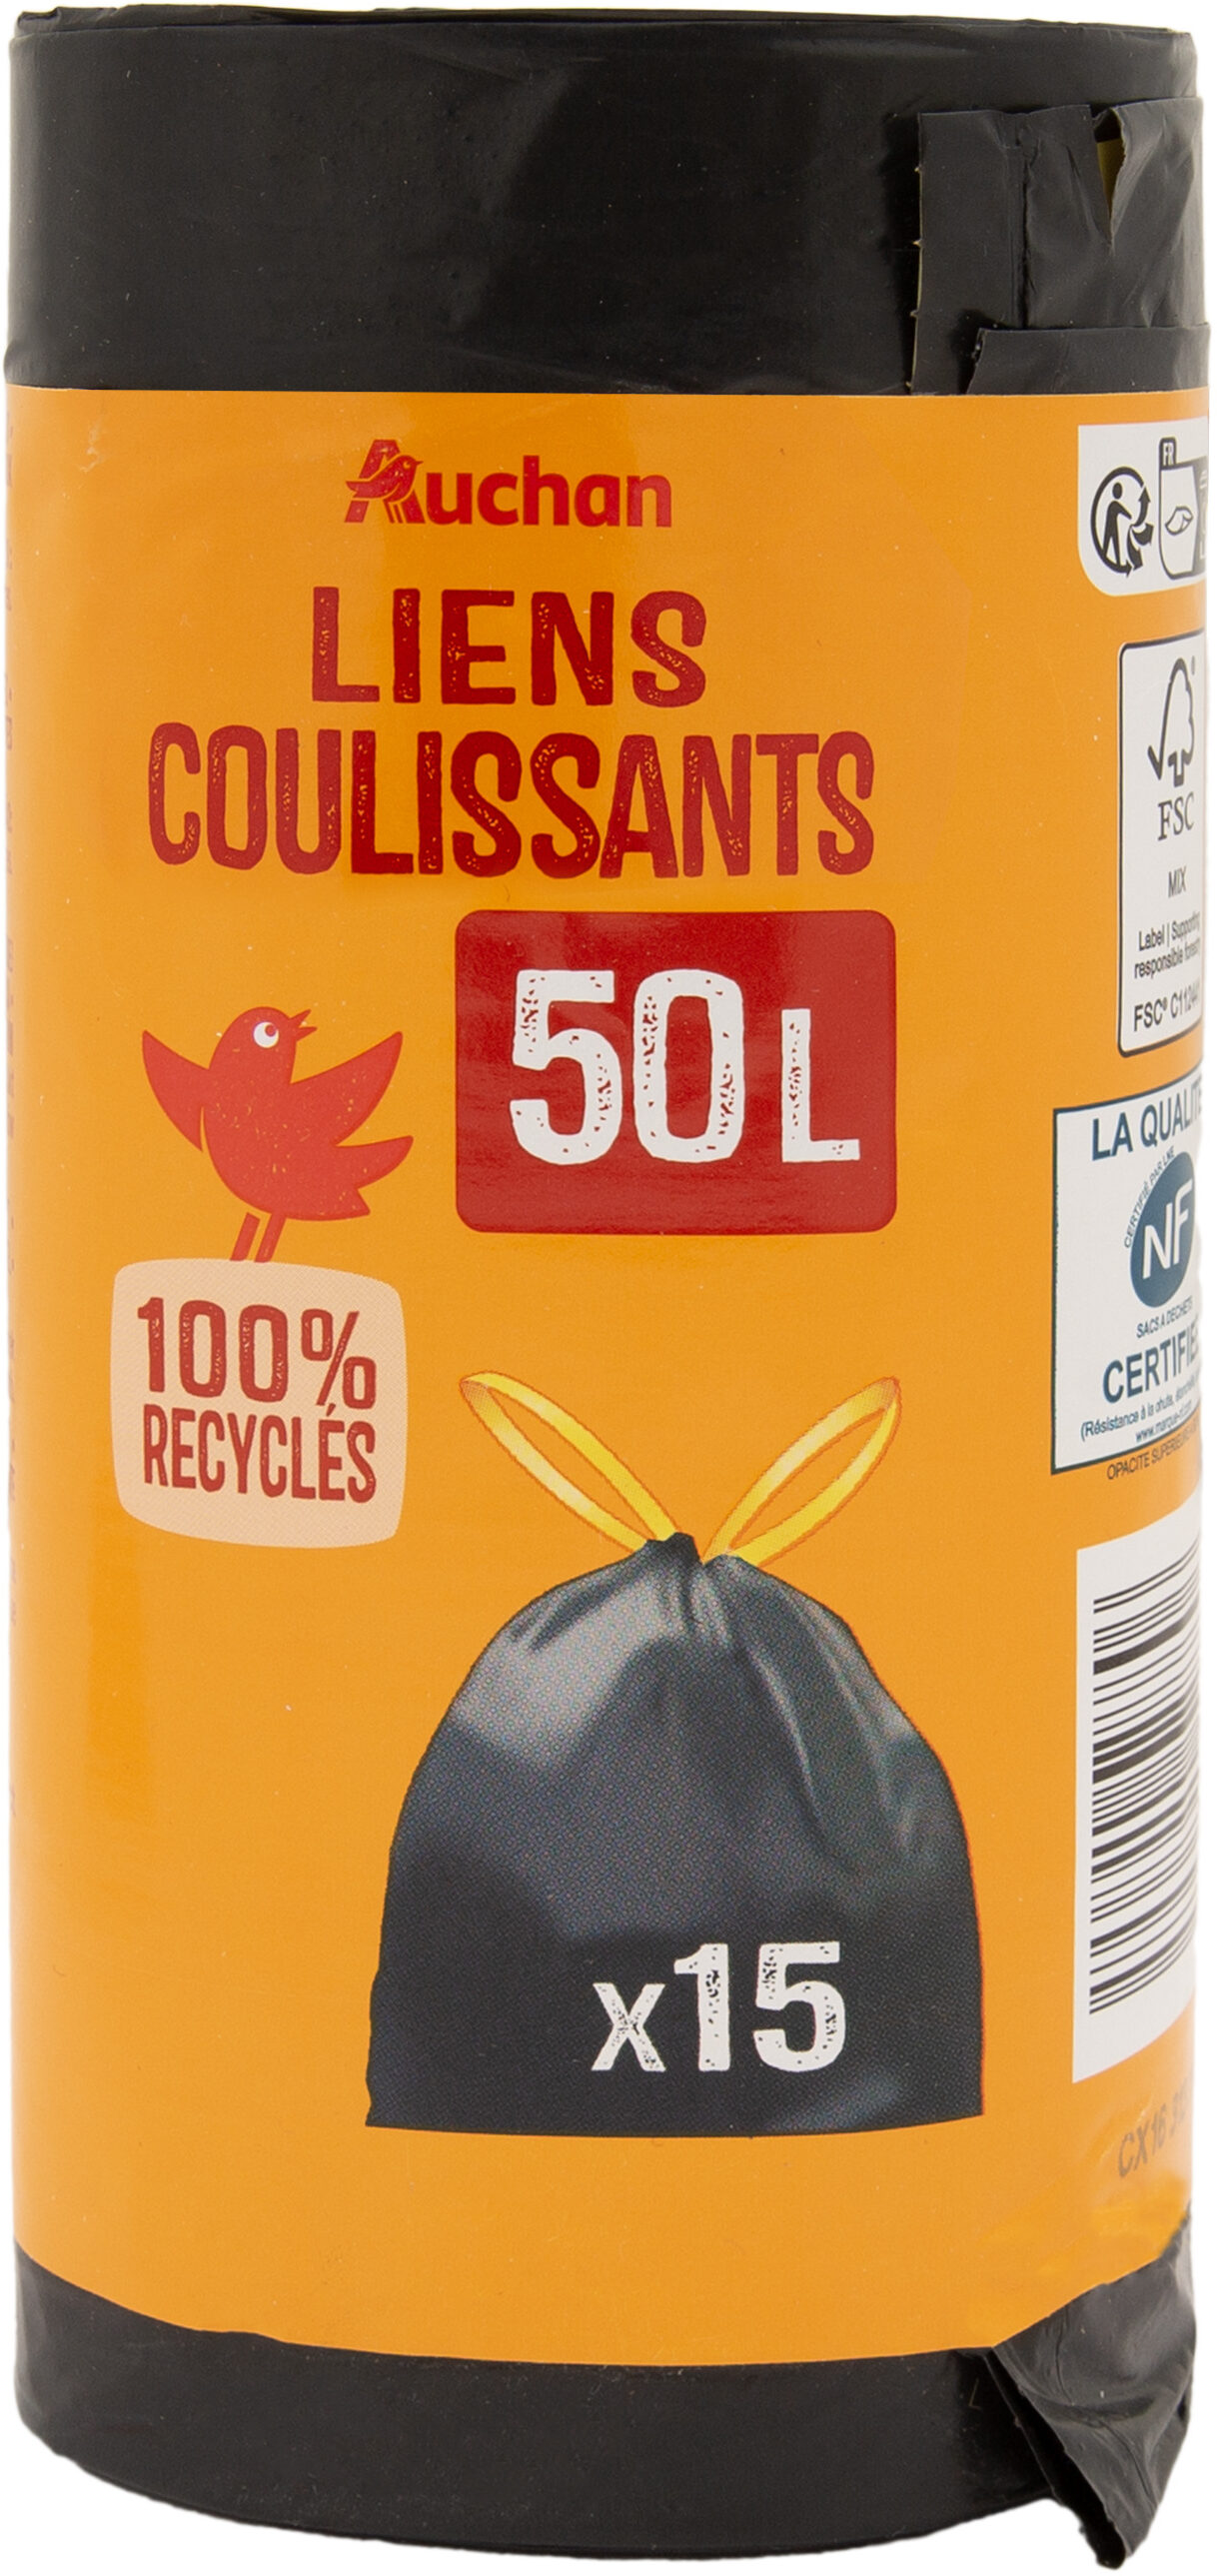 Sacs poubelle liens coulissants 50 litres x15 sacs - Product - fr